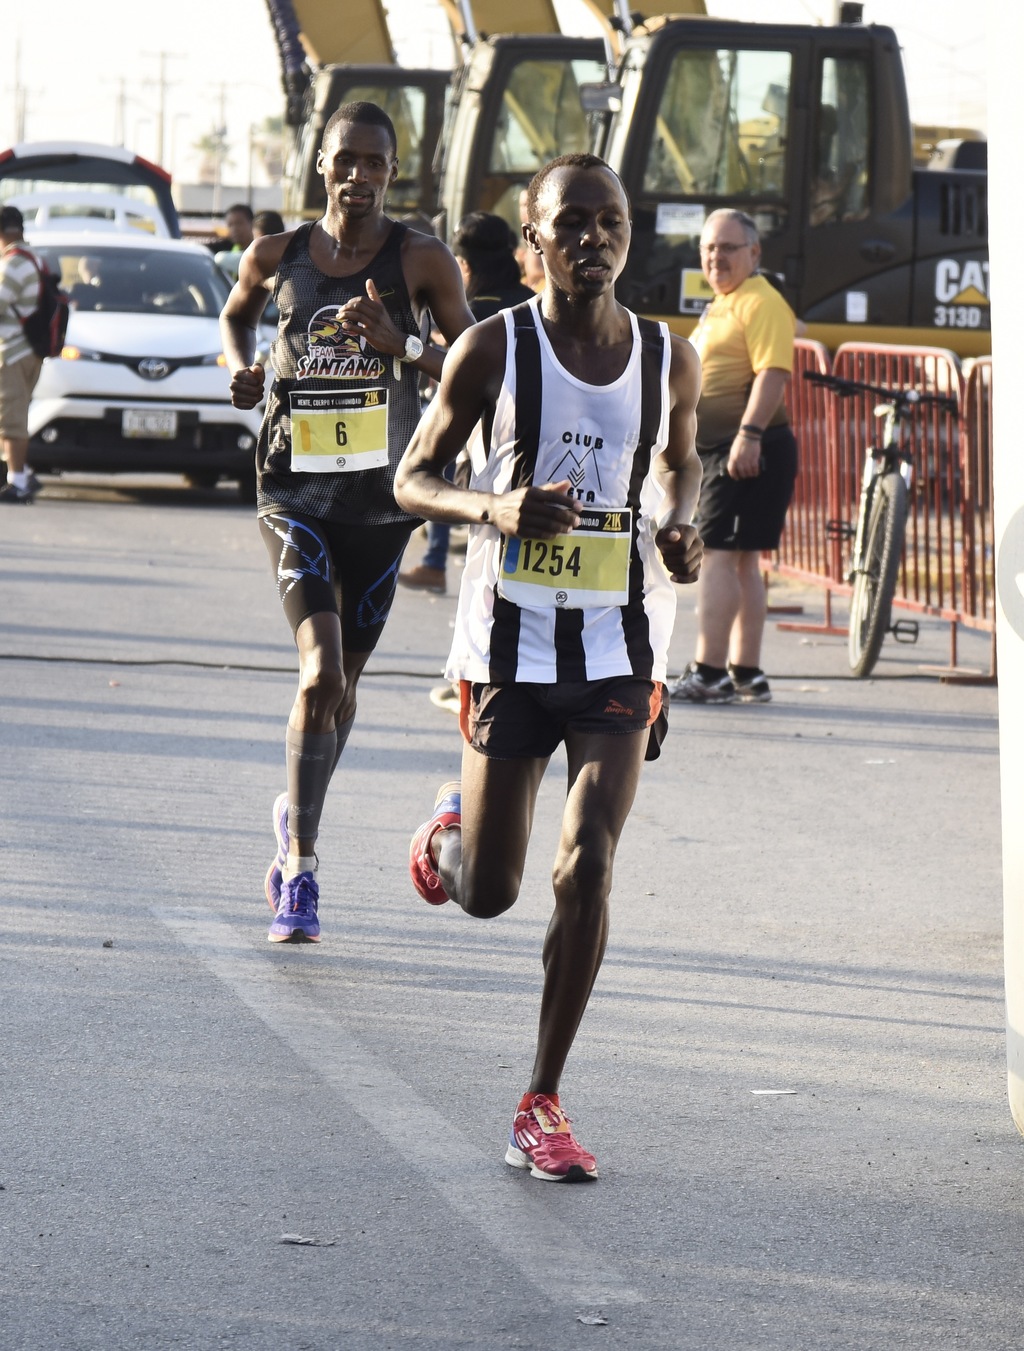 Kenianos se llevan el Medio Maratón